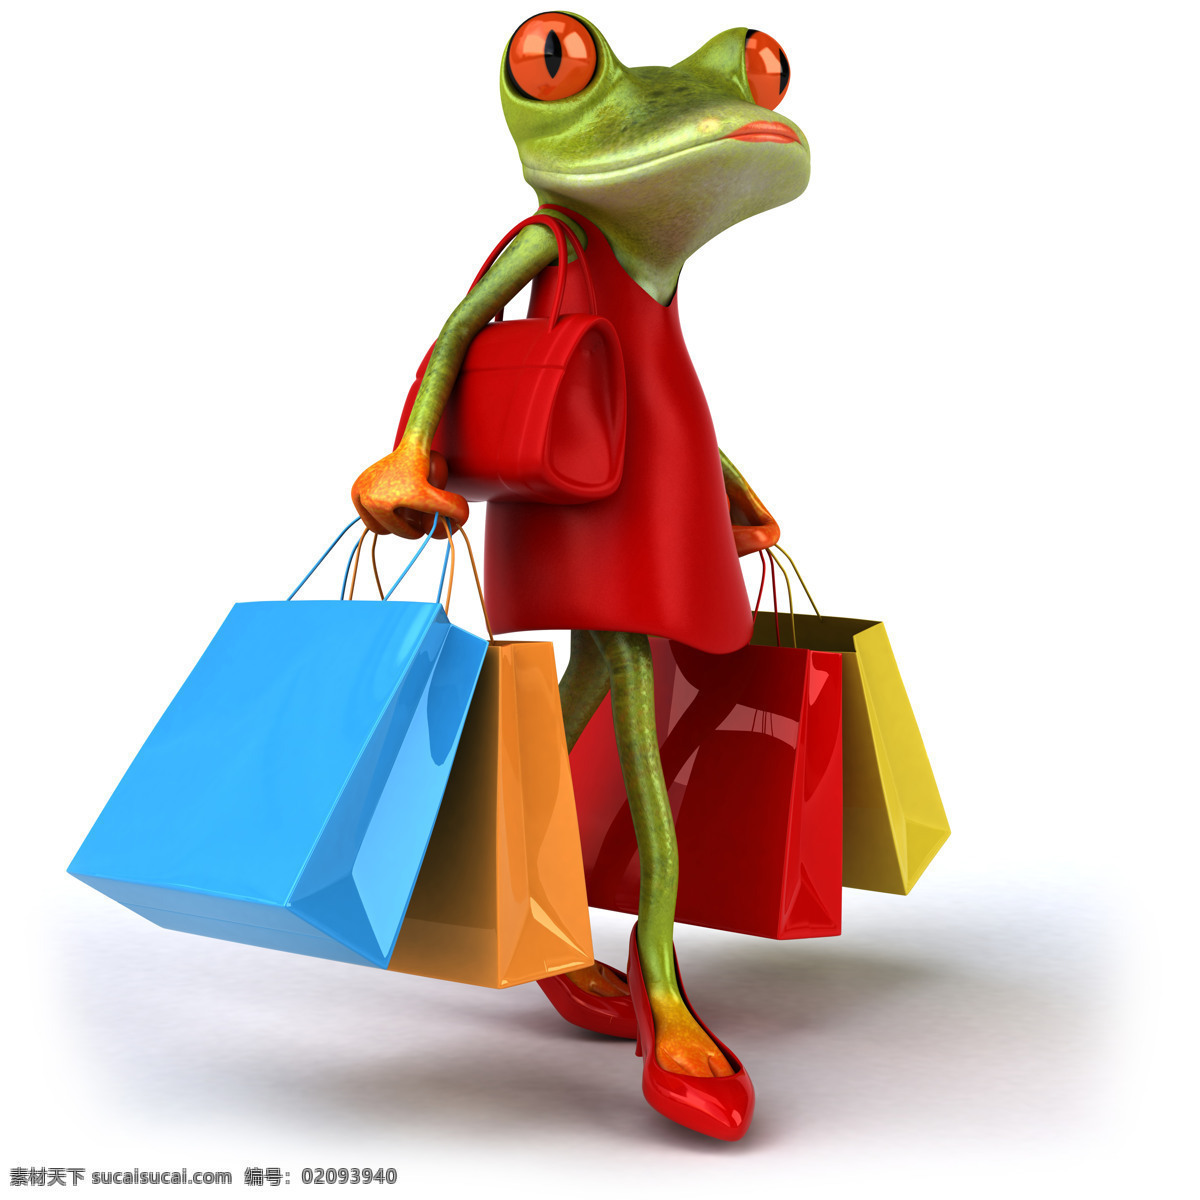 提 购物袋 青蛙 青蛙摄影 袋子 购物 卡通青蛙 水中生物 生物世界